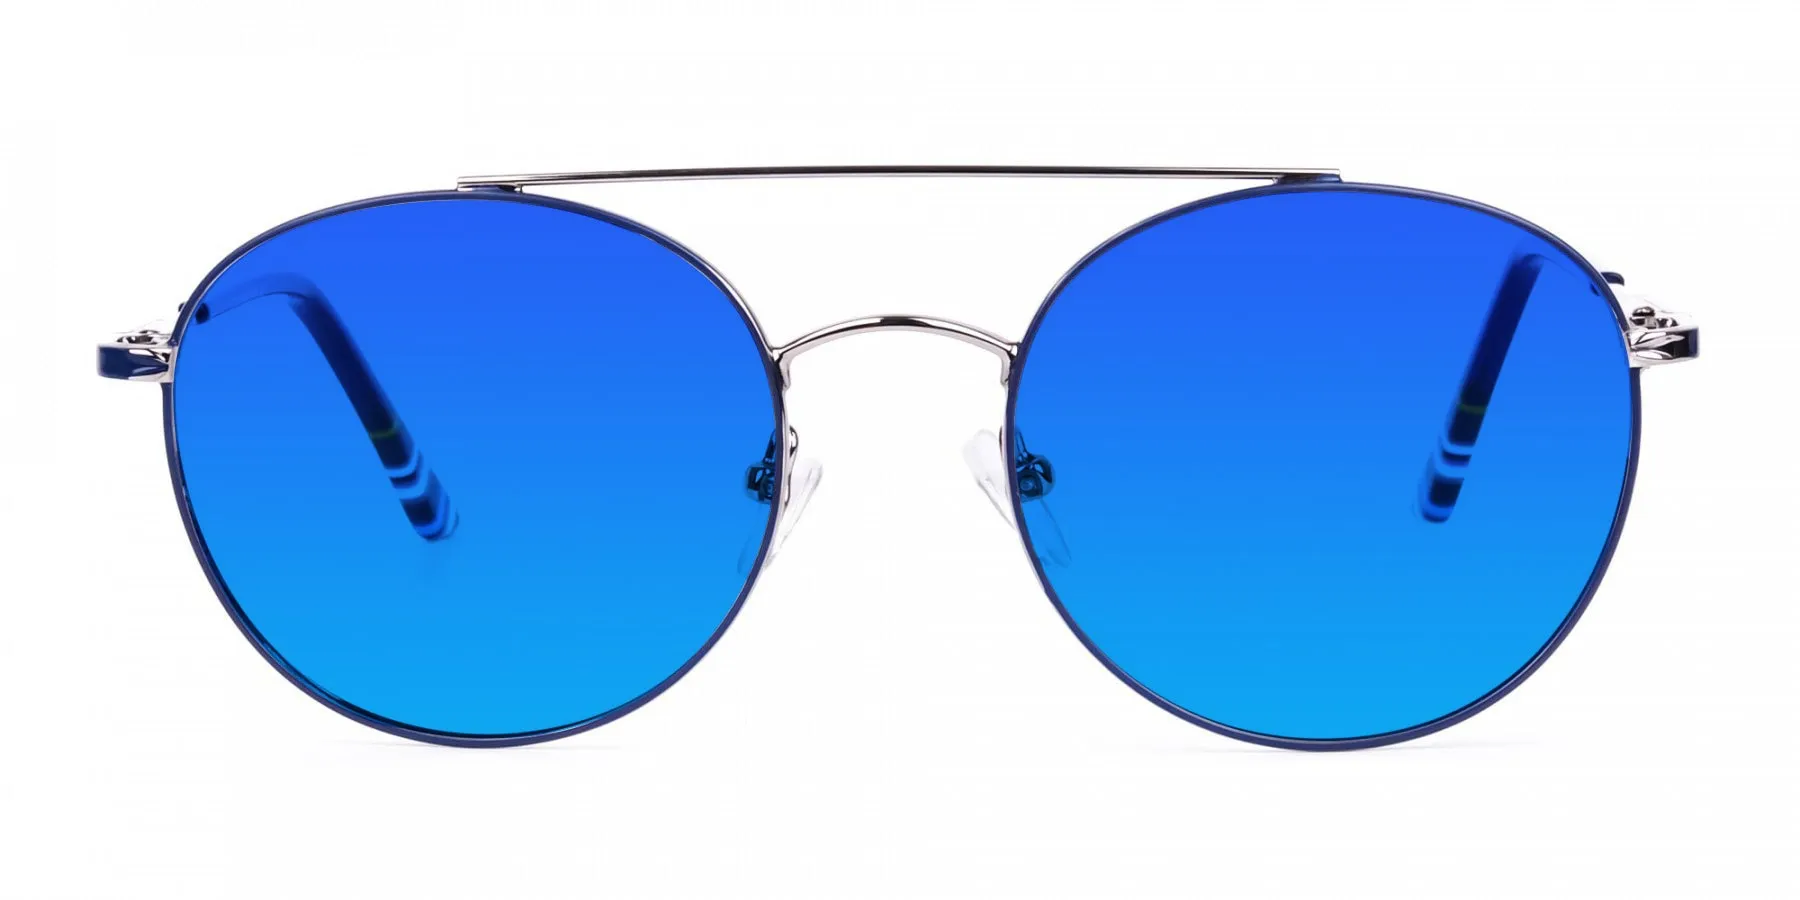 double bridge sunglasses-2